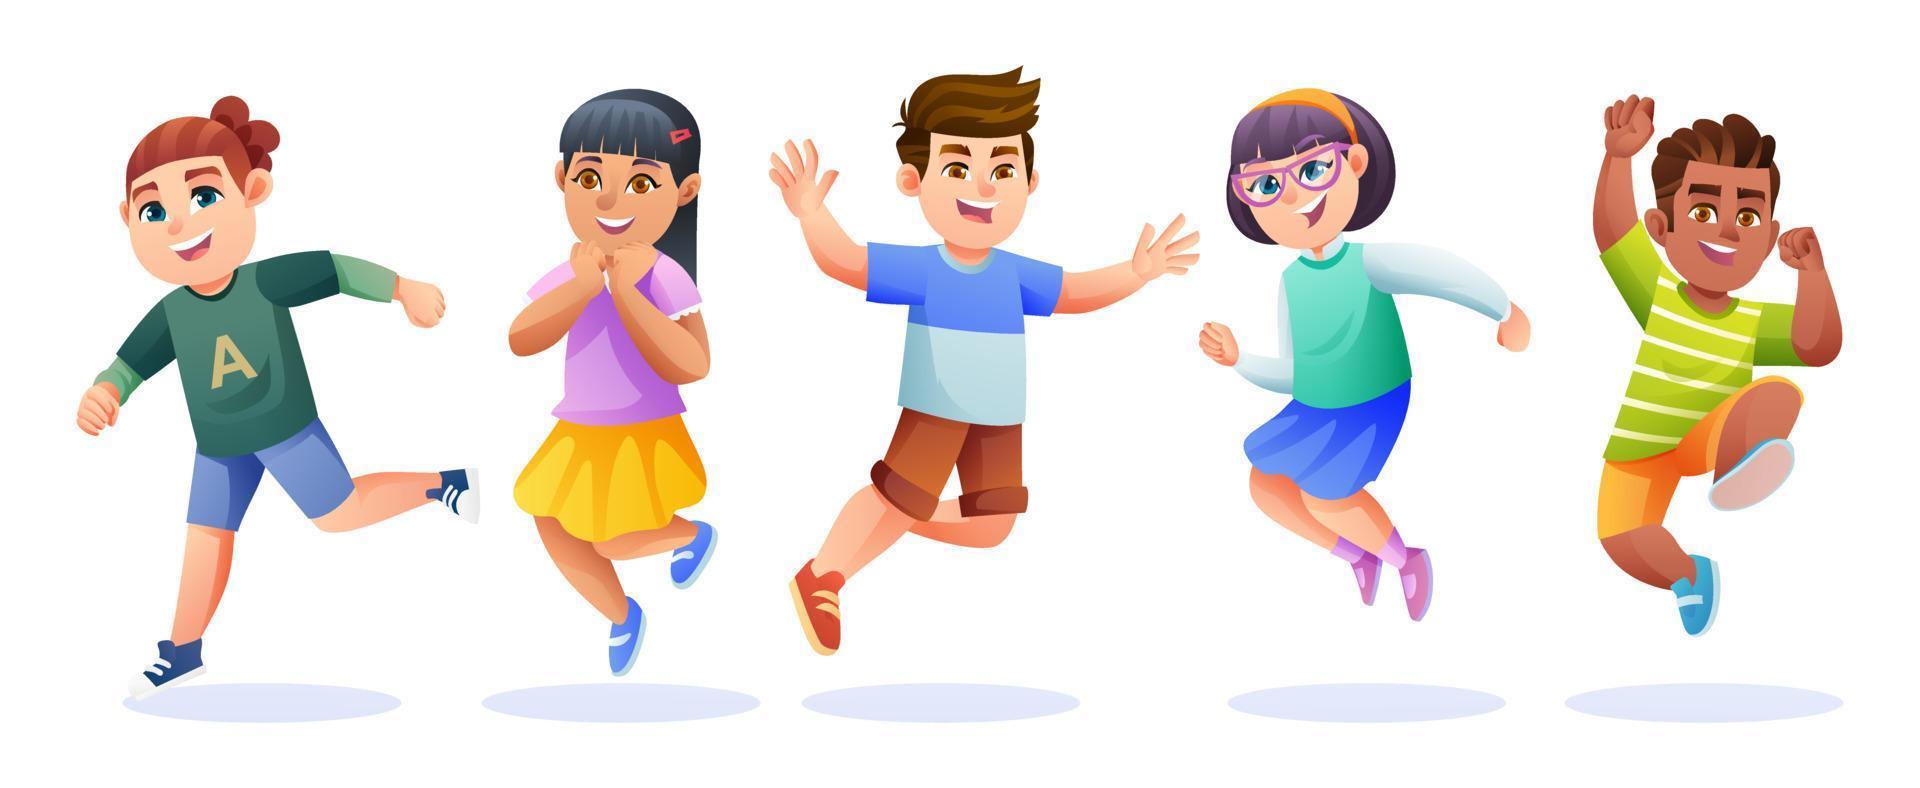 niños alegres saltando juntos ilustración de dibujos animados 15320720  Vector en Vecteezy